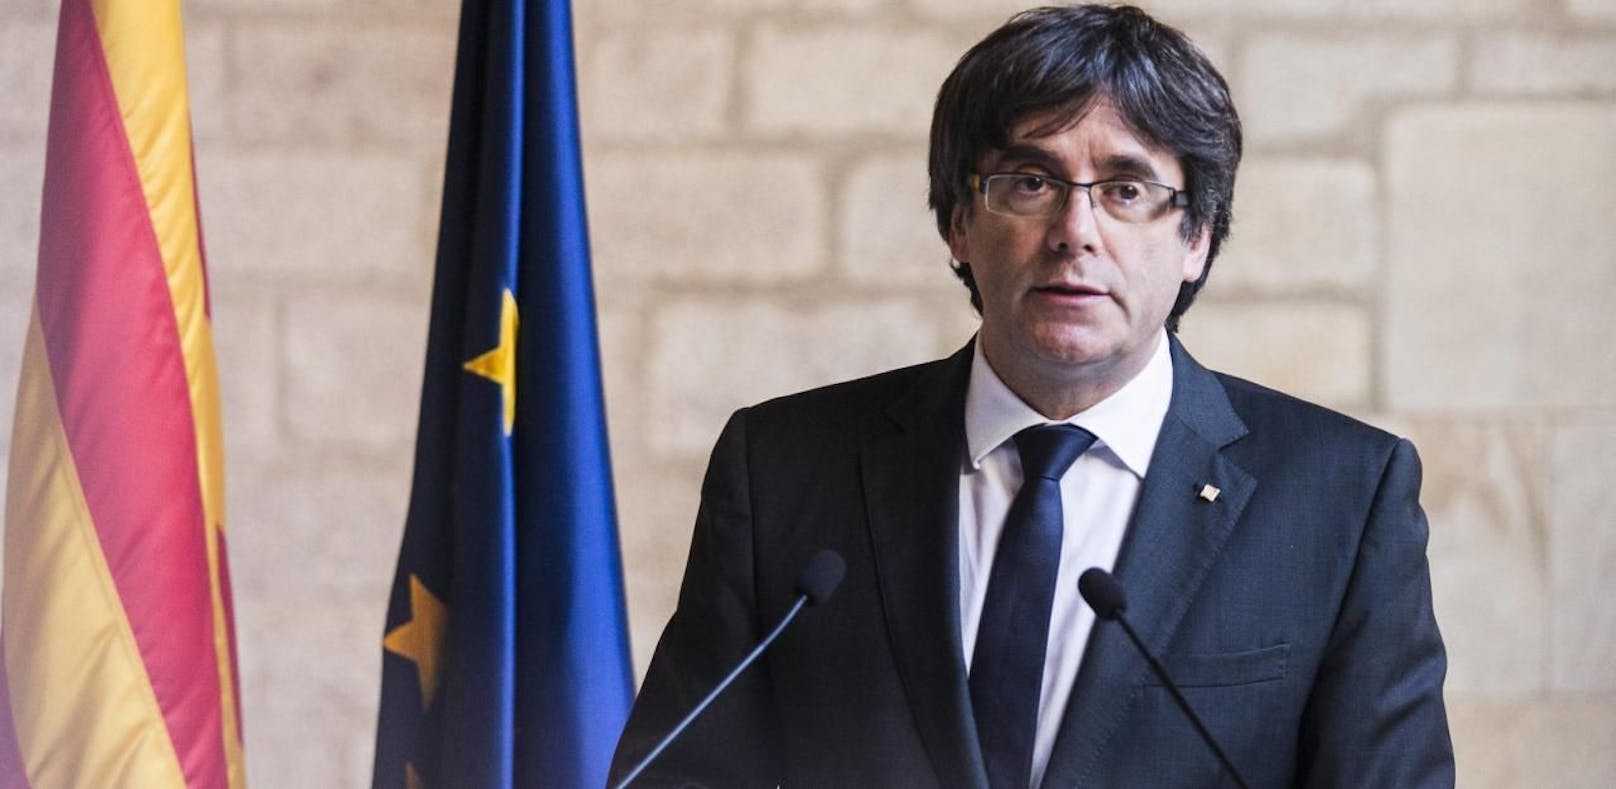 Puigdemont verzichtet auf Präsidentenamt